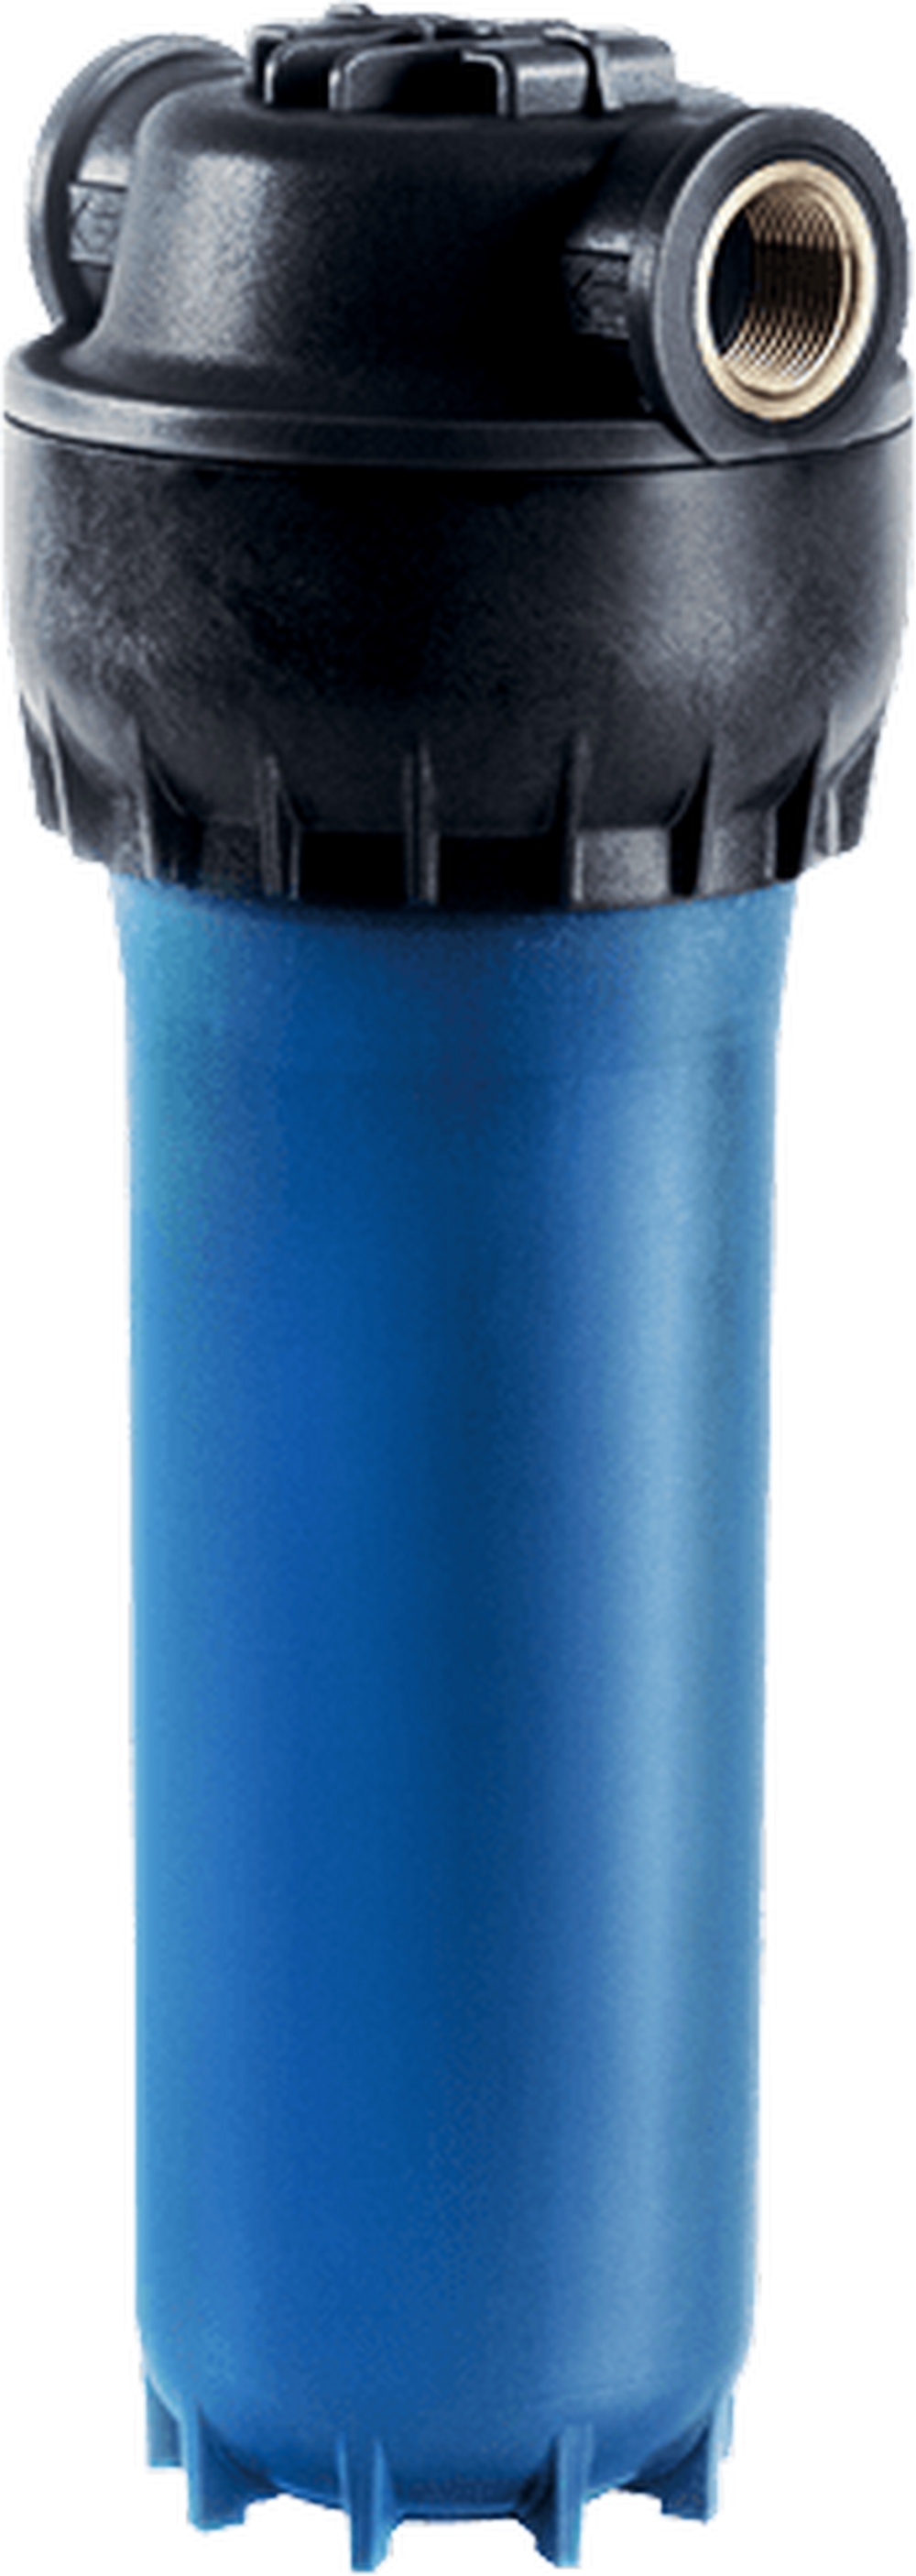 Ціна магістральний фільтр Aquaphor армований для холодної води в Харкові